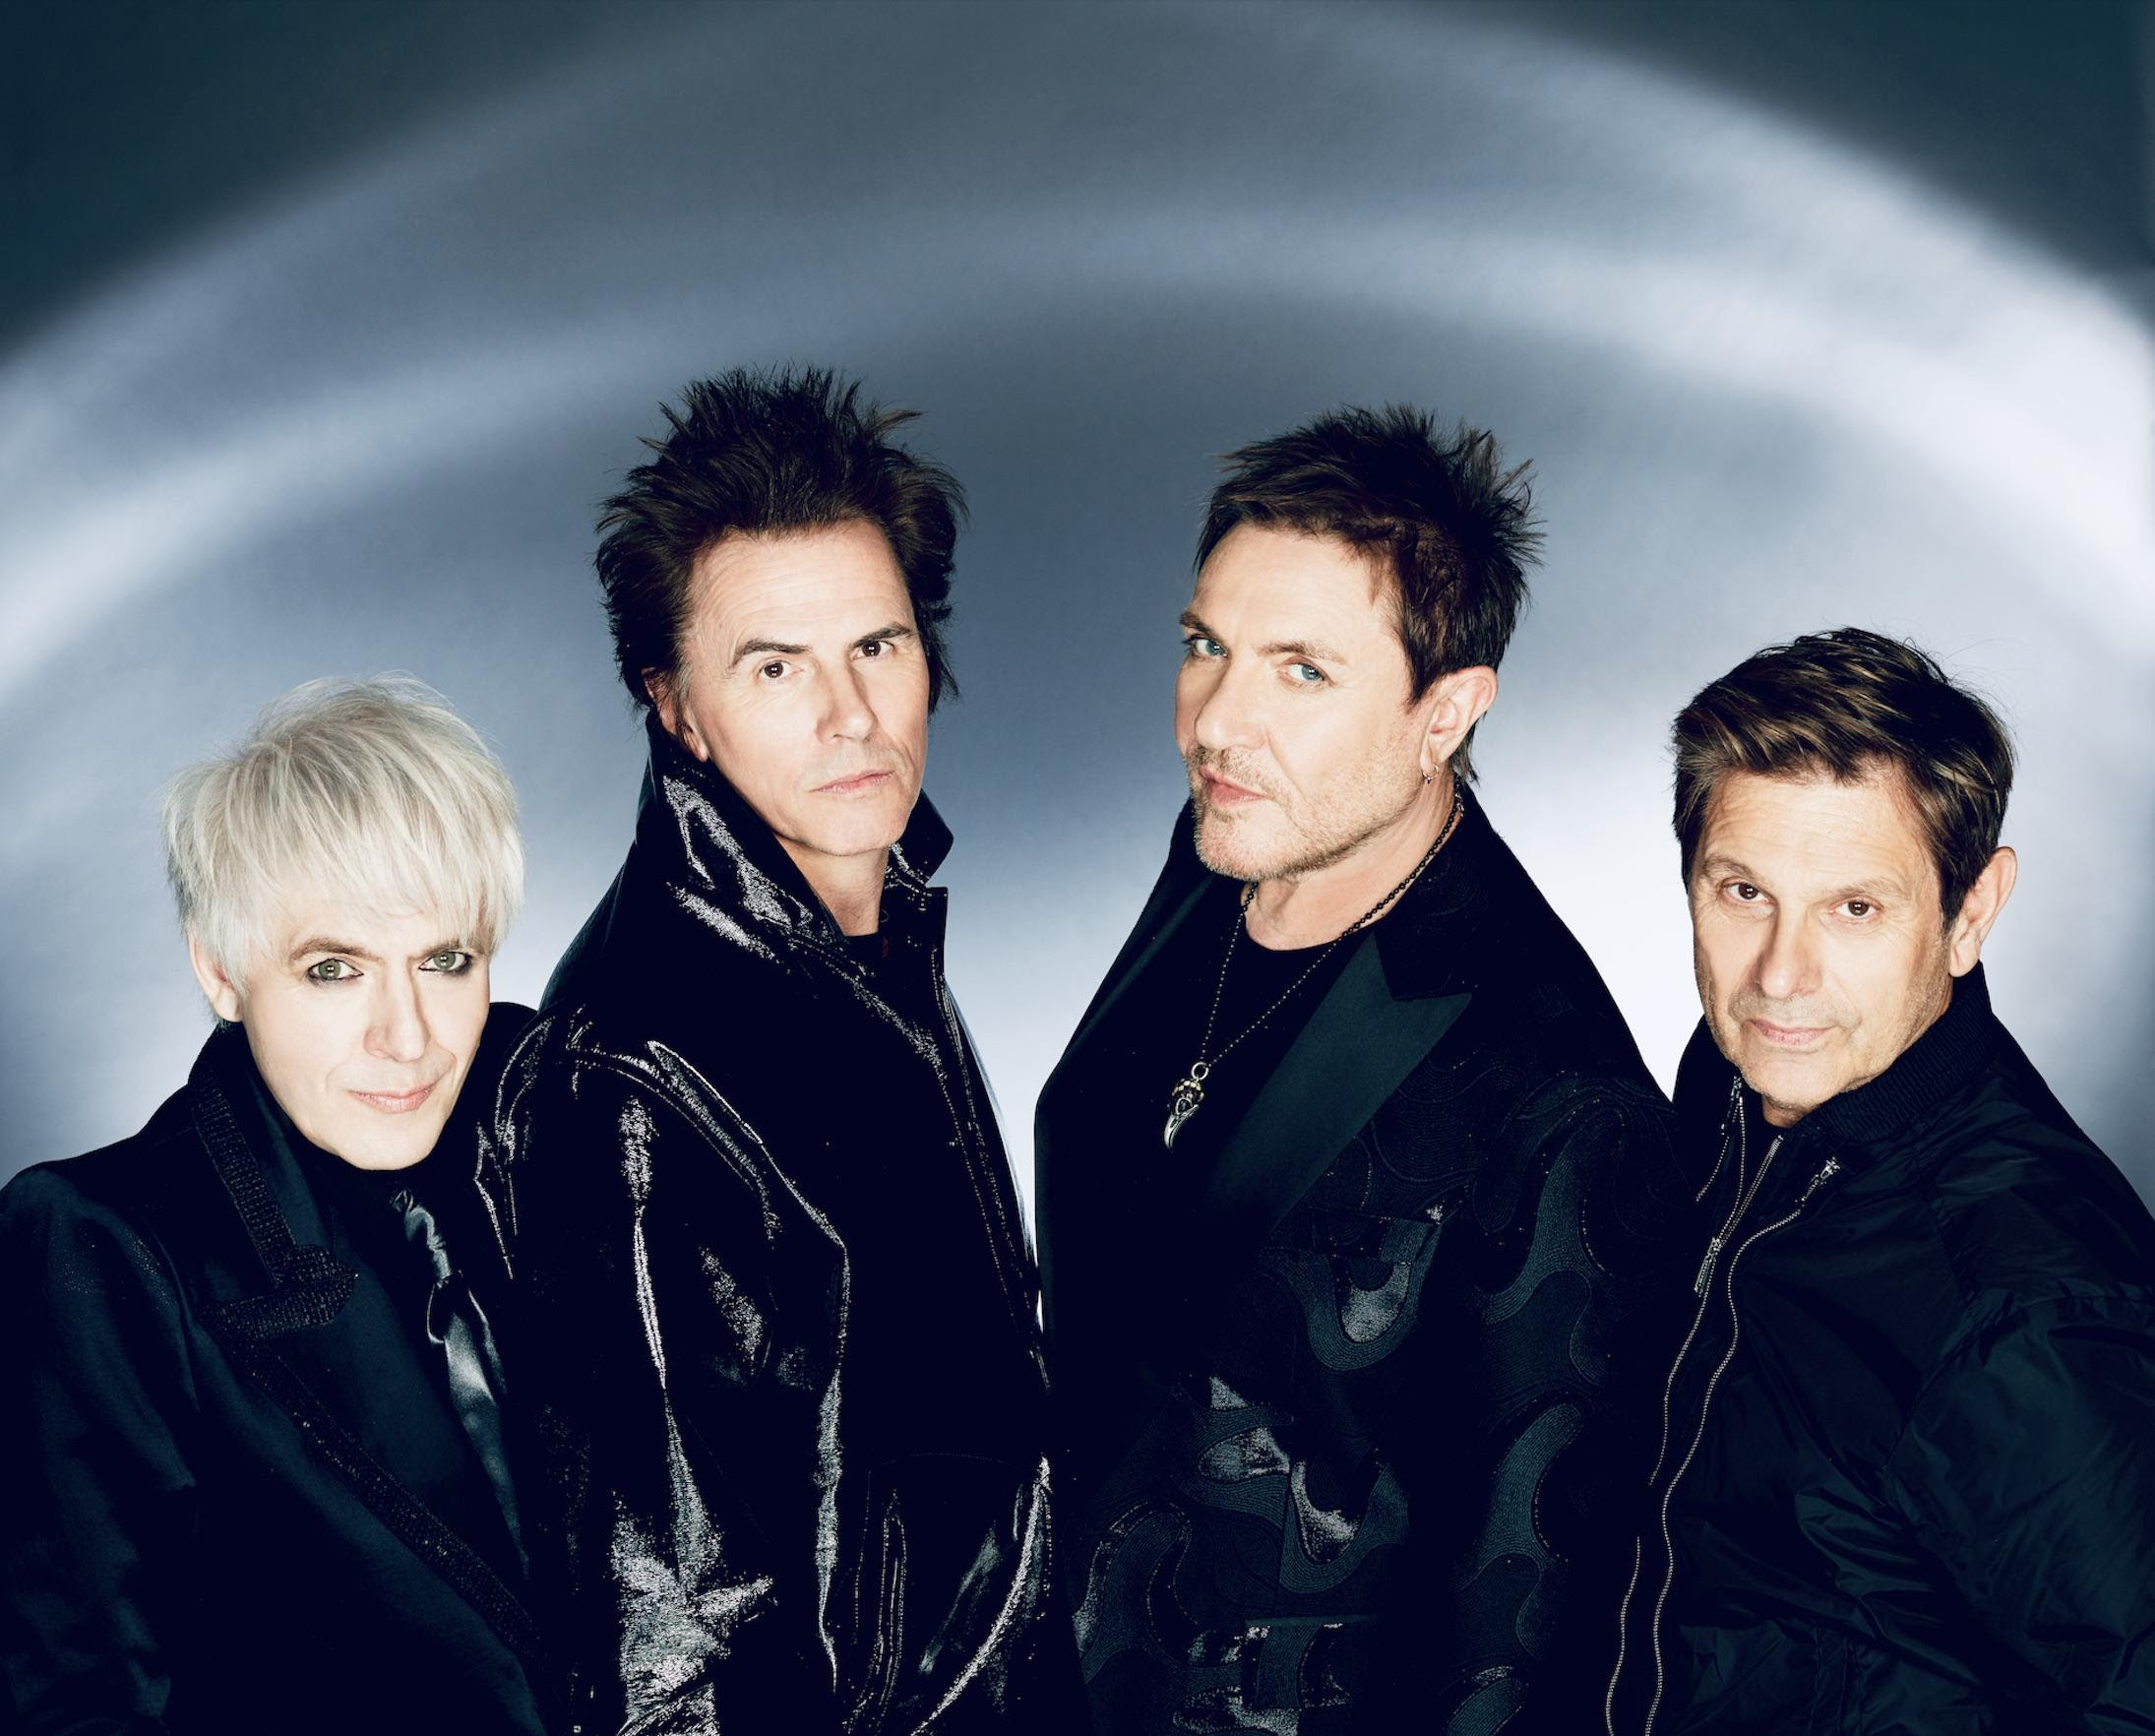 Duran Duran lanza otro adelanto de su nuevo disco con “More Joy!” (Feat. Chai)